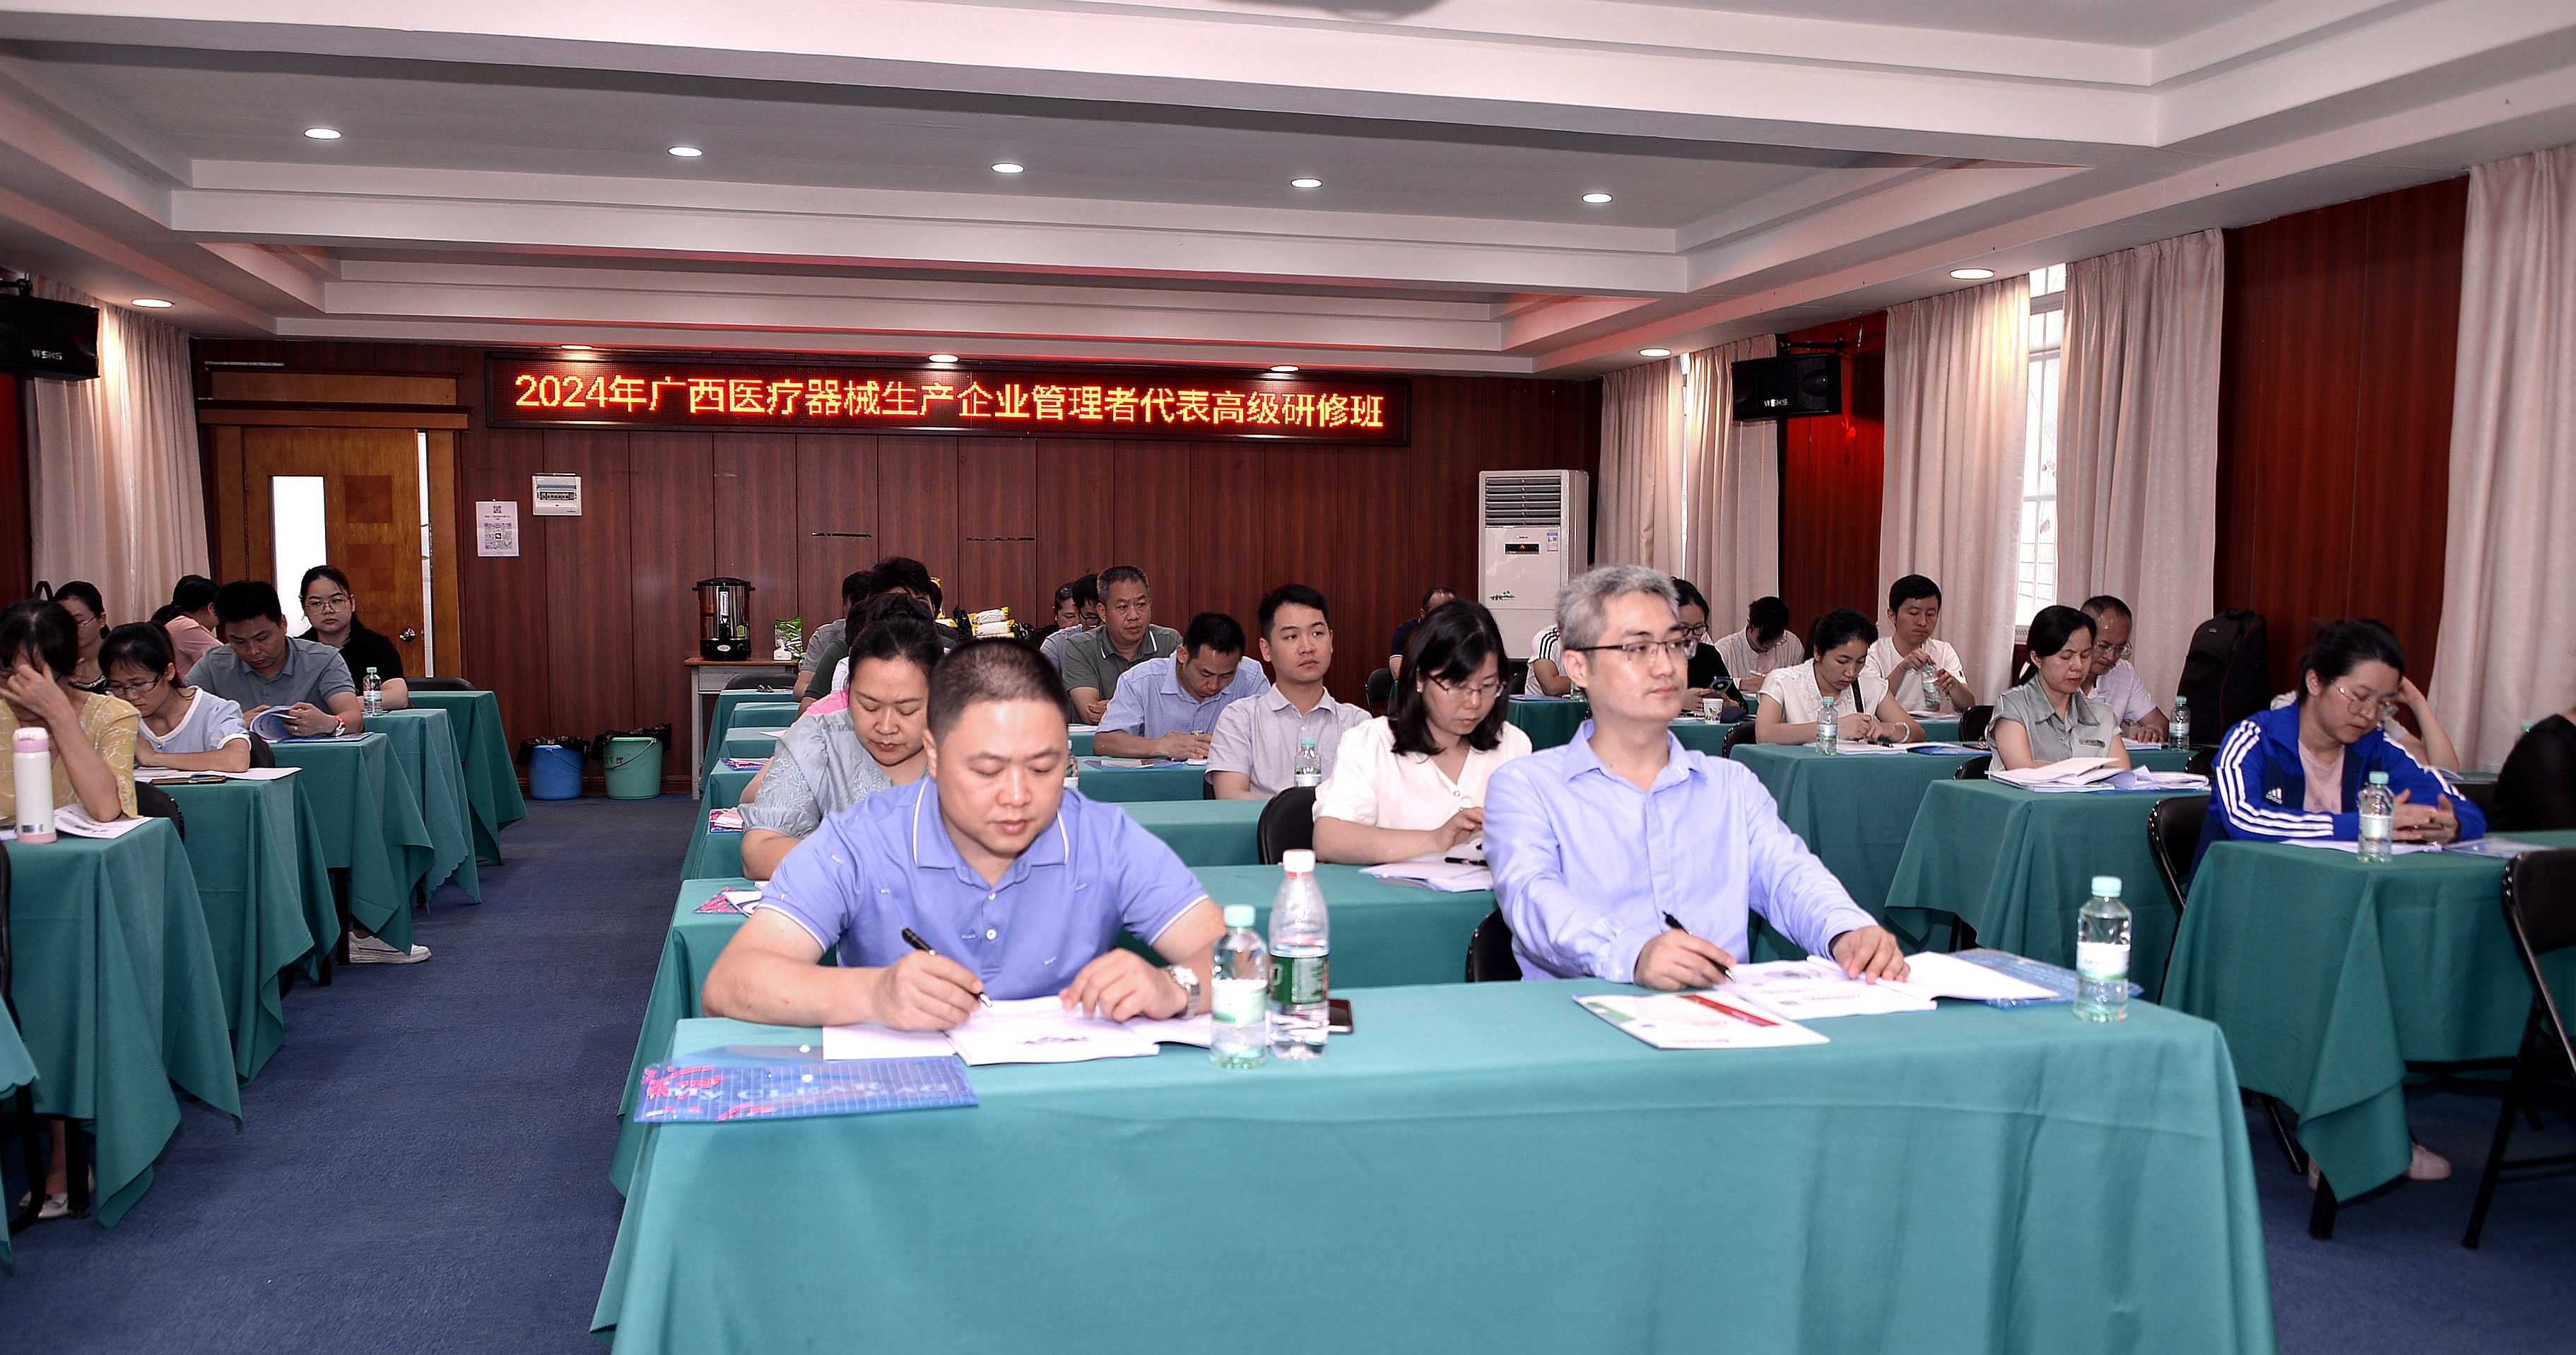 2024年广西医疗器械生产企业管理者代表培训顺利结课